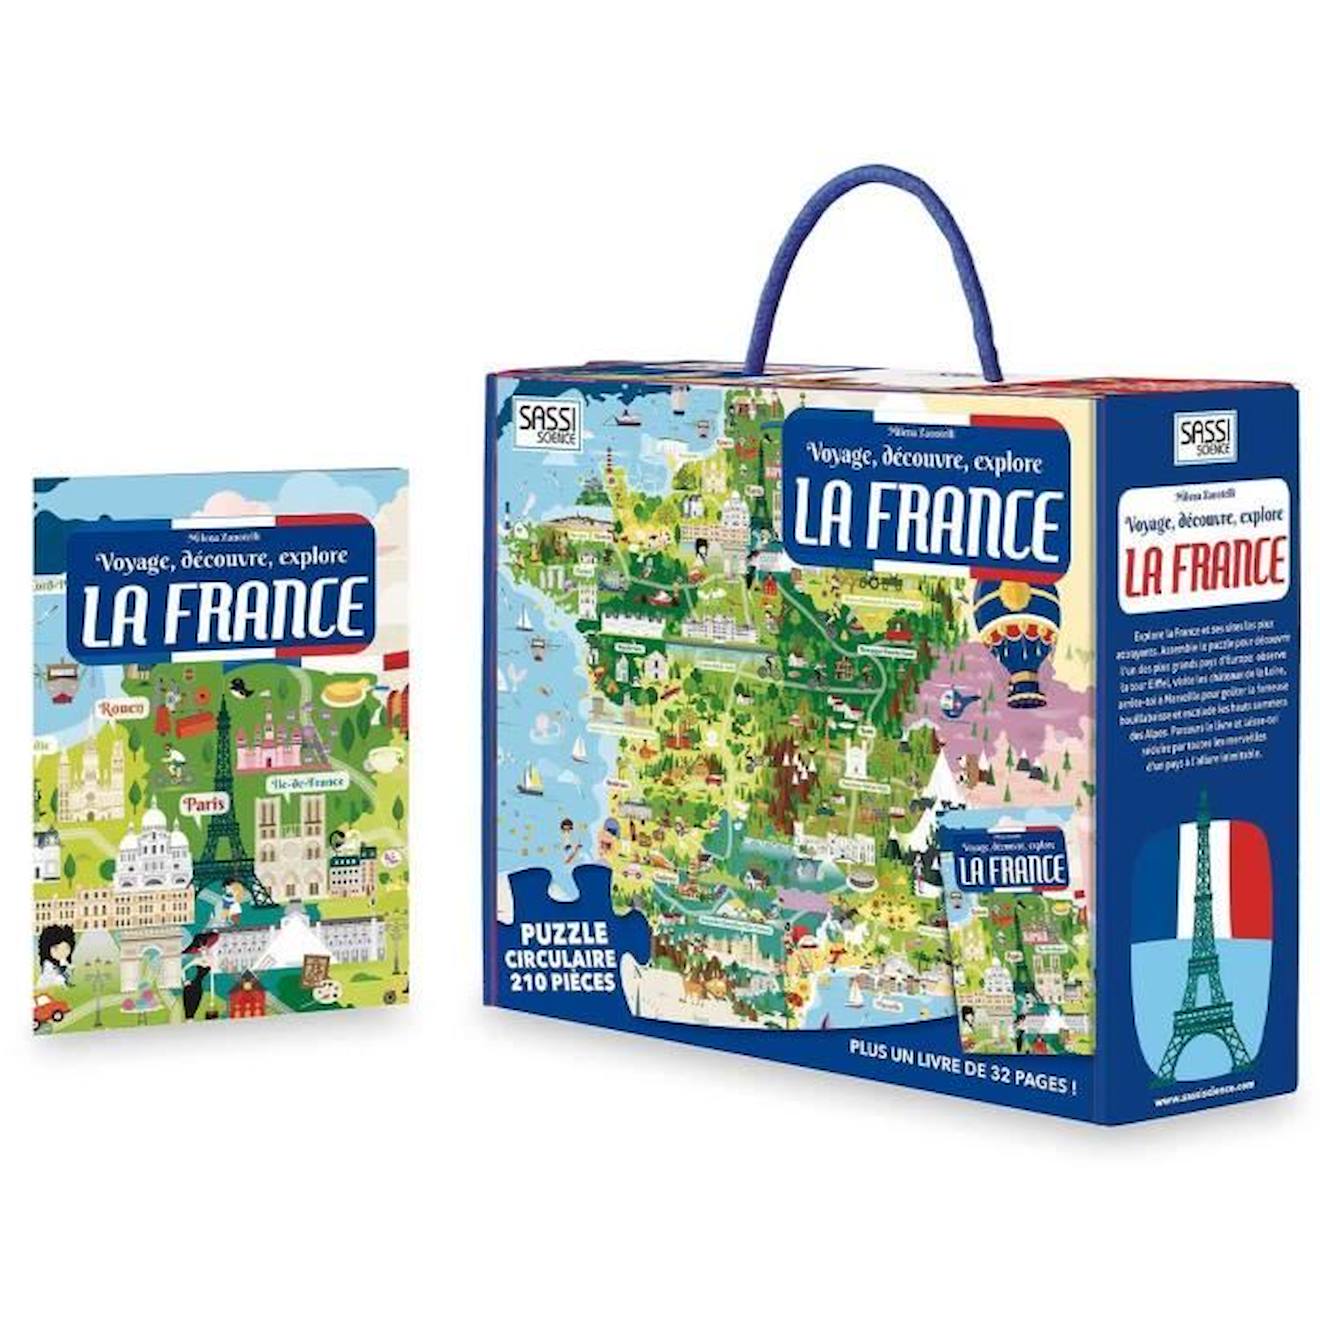 Puzzle & Livre - Voyagez, Découvrez, Explorez, La France Bleu